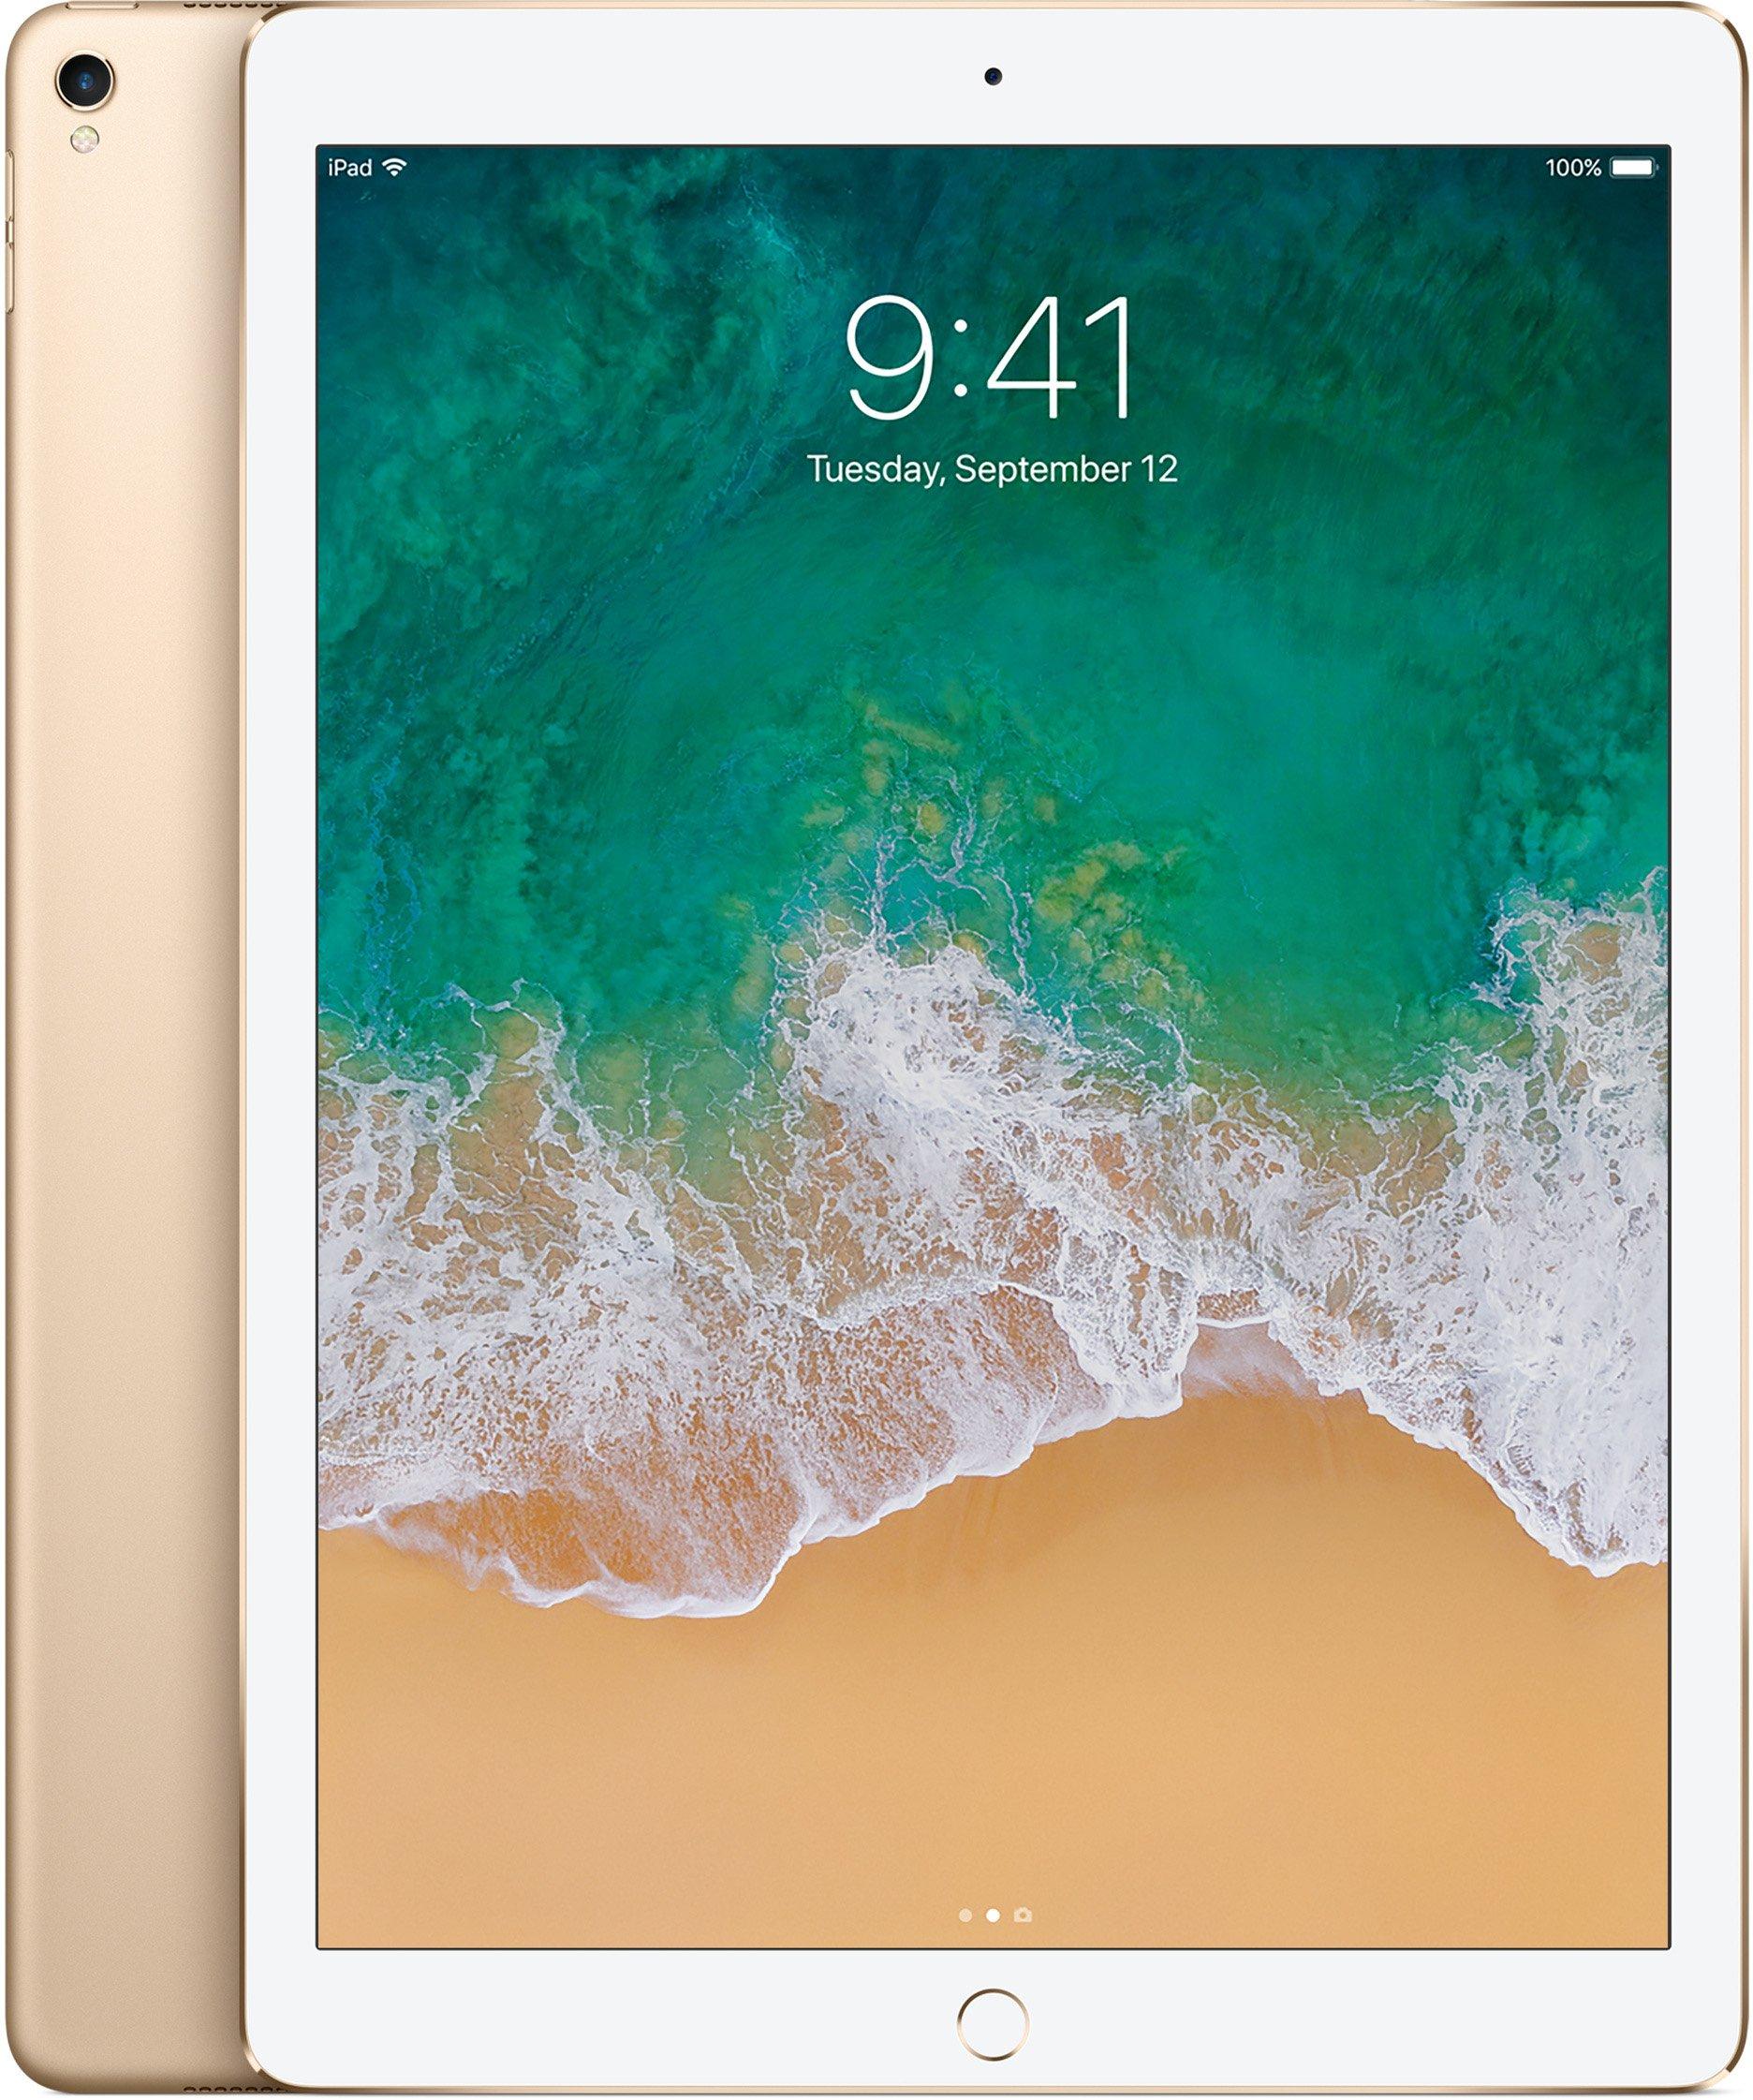 iPad Pro 12.9" 2nd Gen (WiFi + Cellular) Factory Unlocked